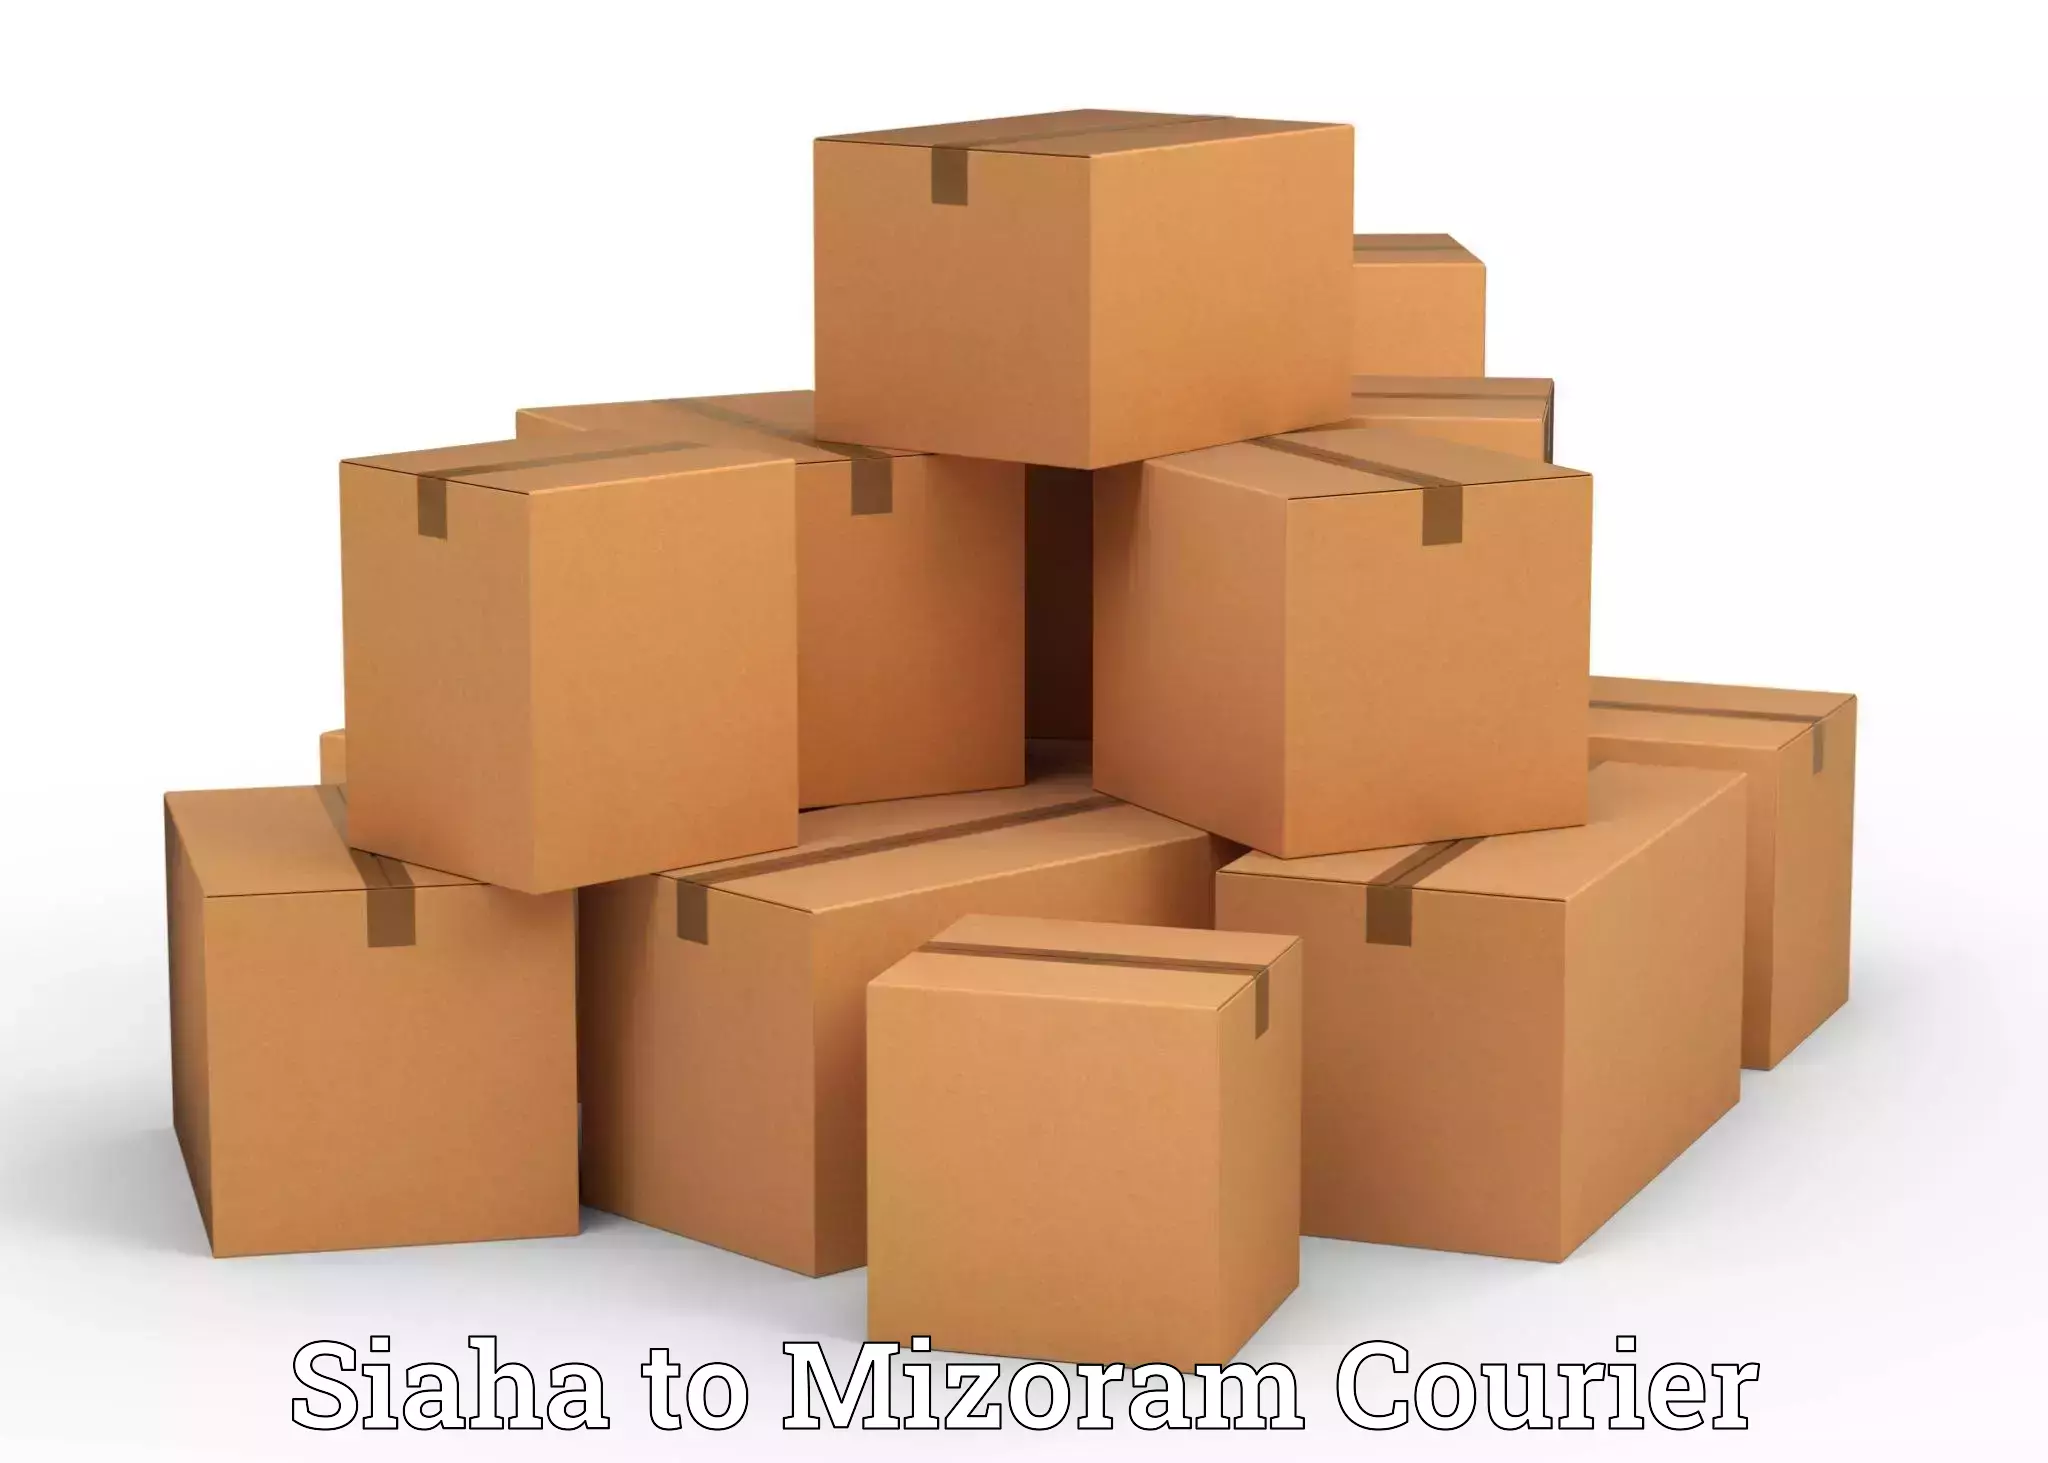 Full-service movers Siaha to Mizoram